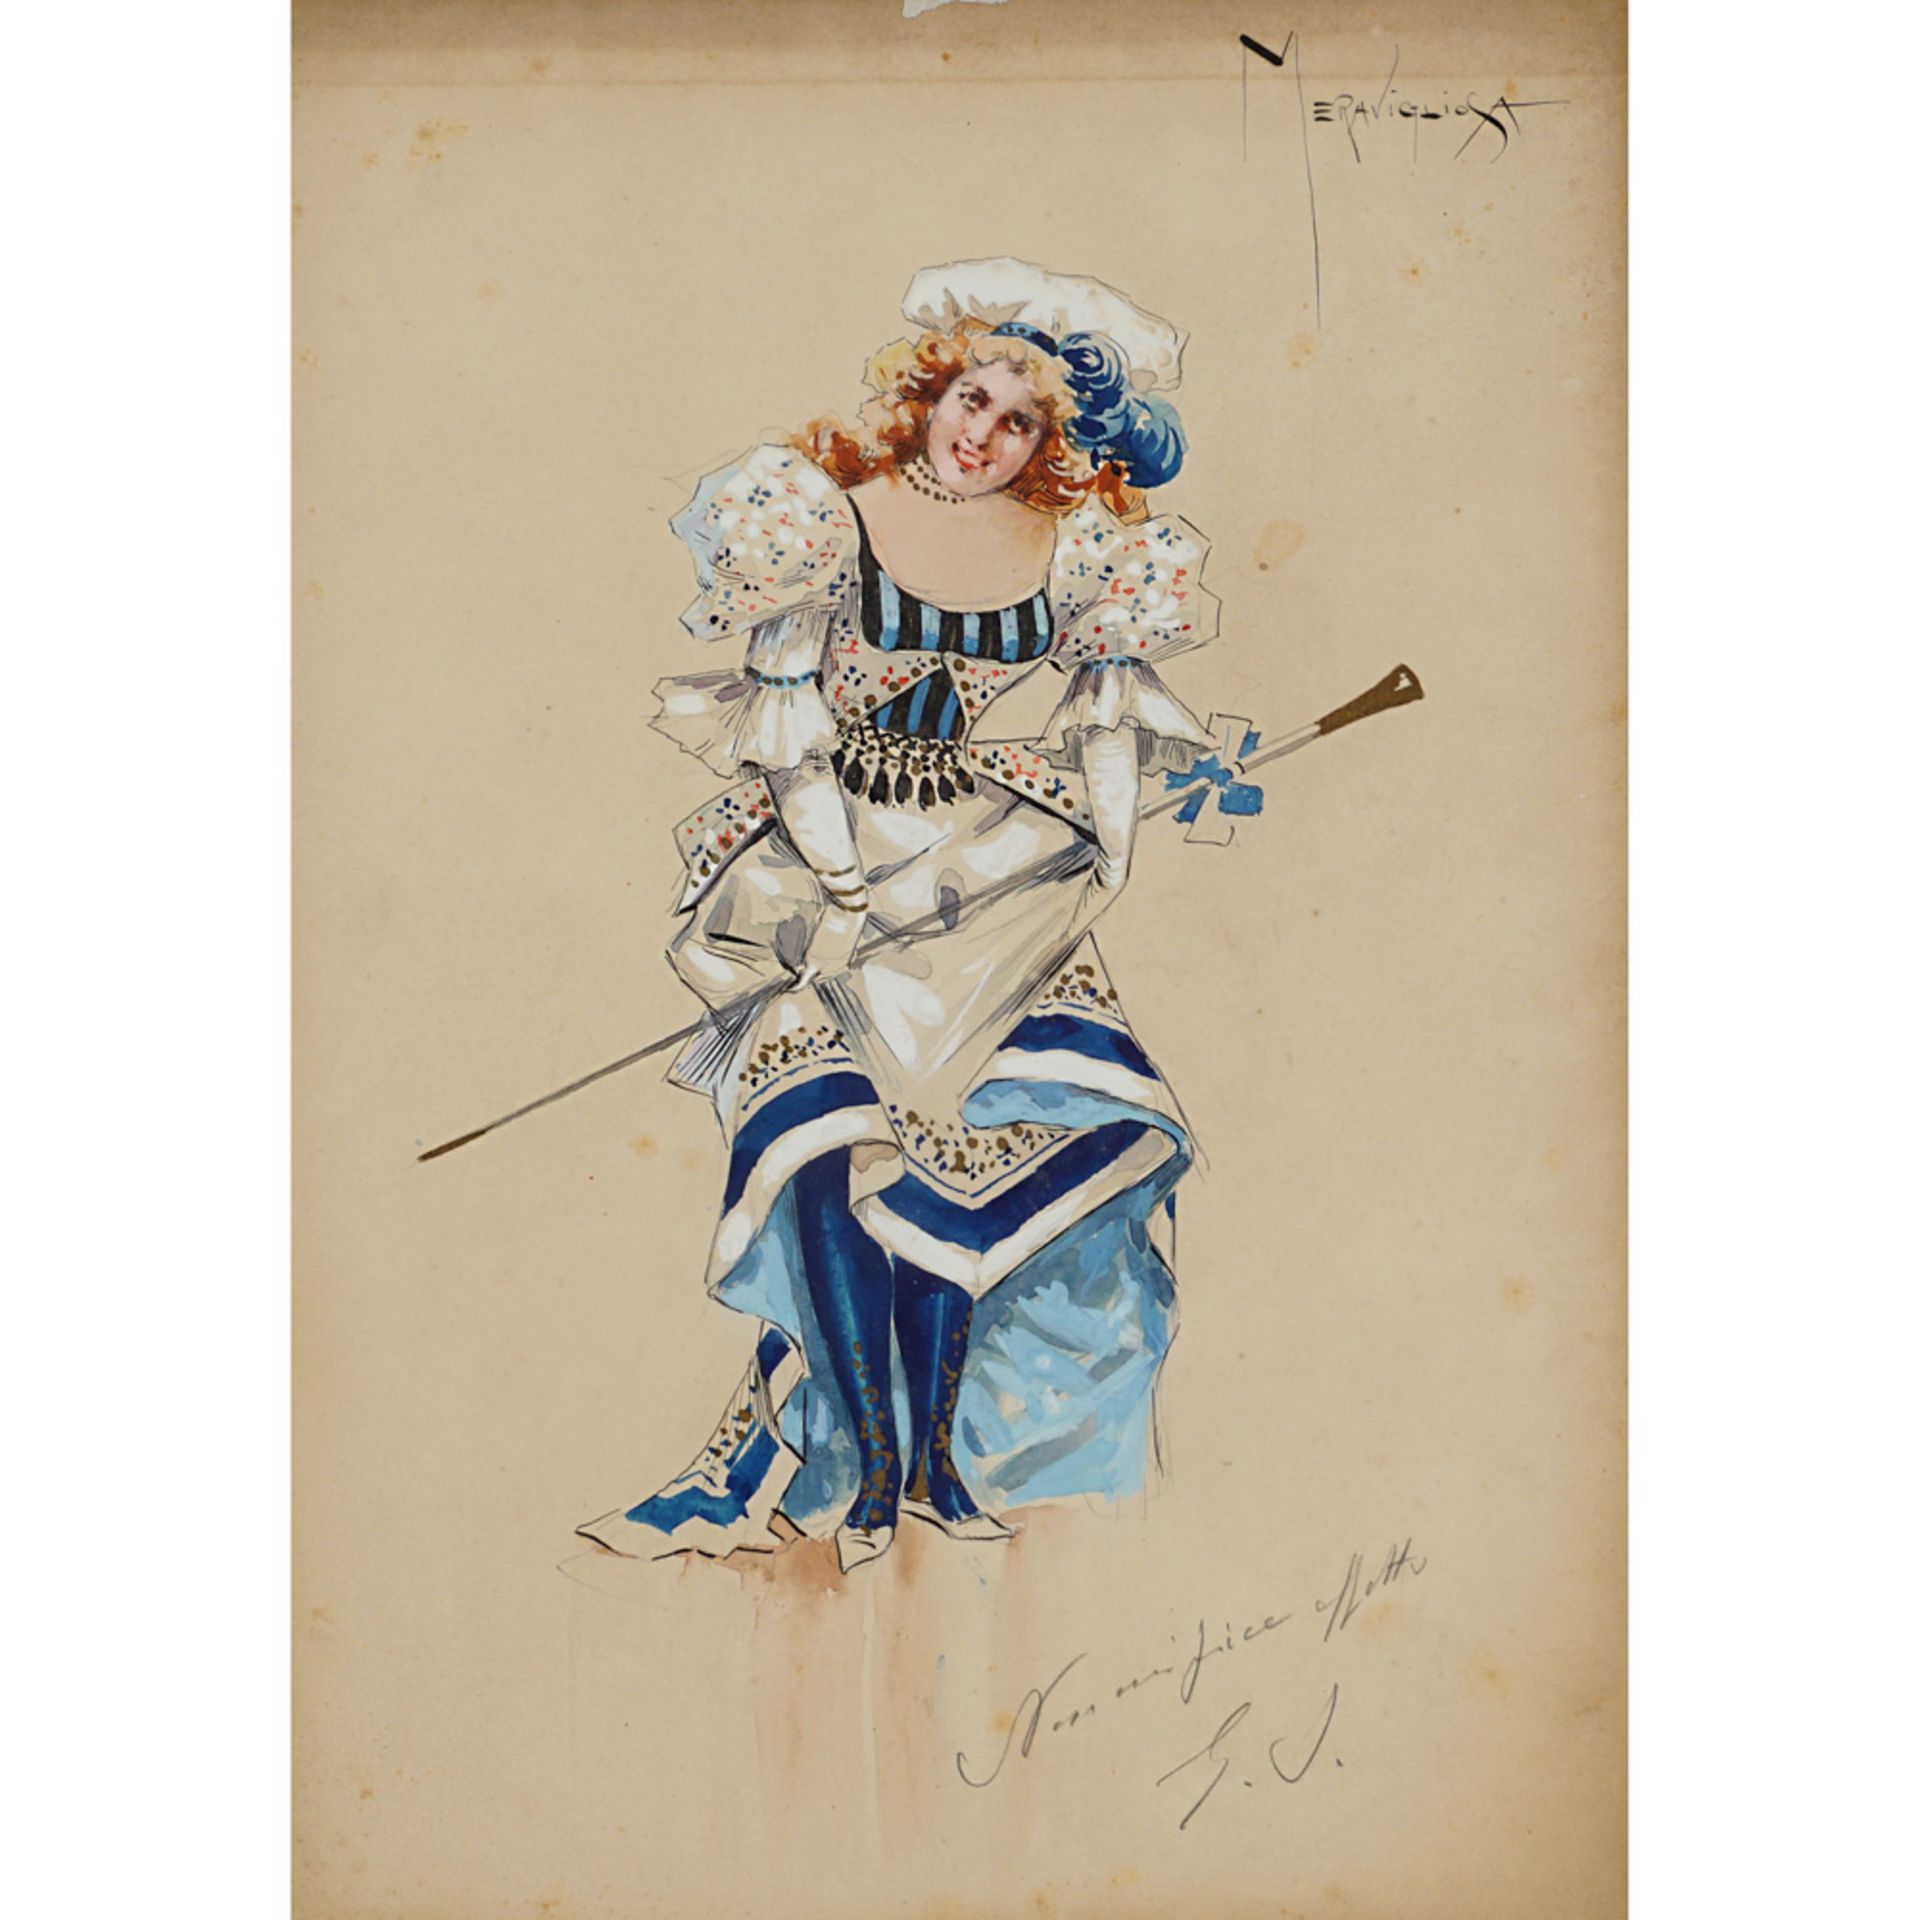 Cotume sketches for "Andrea Chénier" Milano, 1896 circa 34,5x24,2 cm